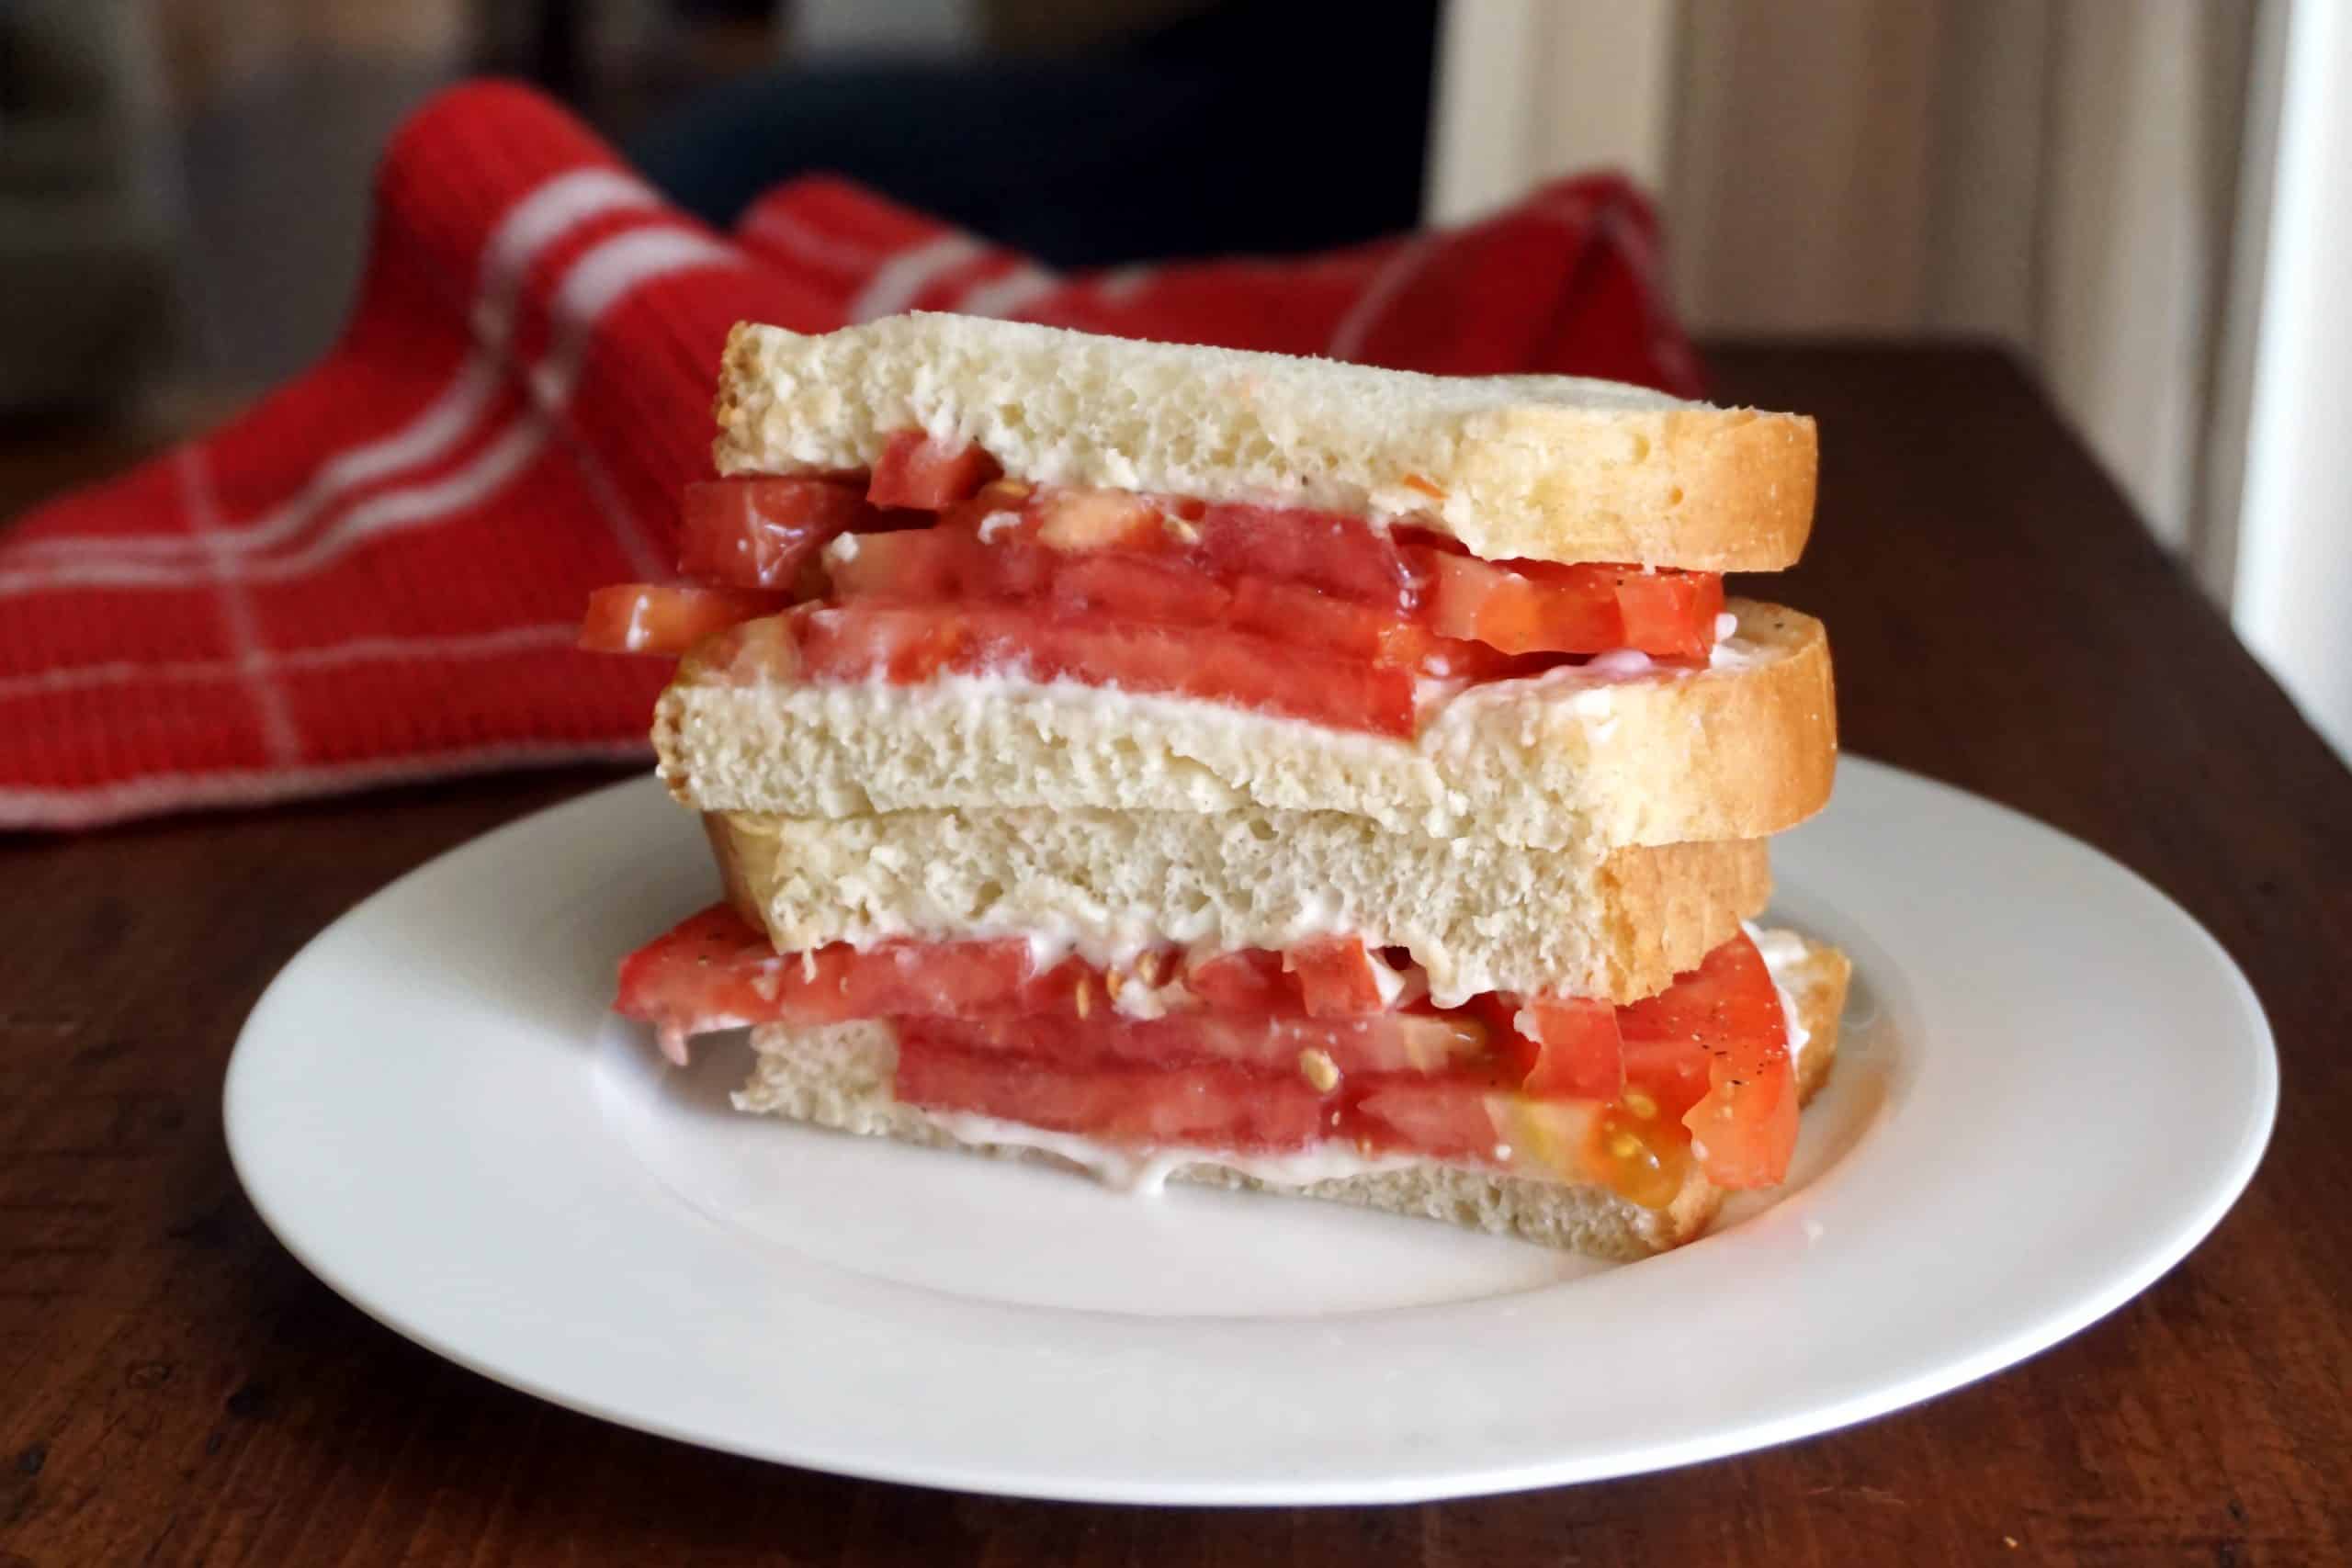 fresh-tomato-and-mayo-sandwich